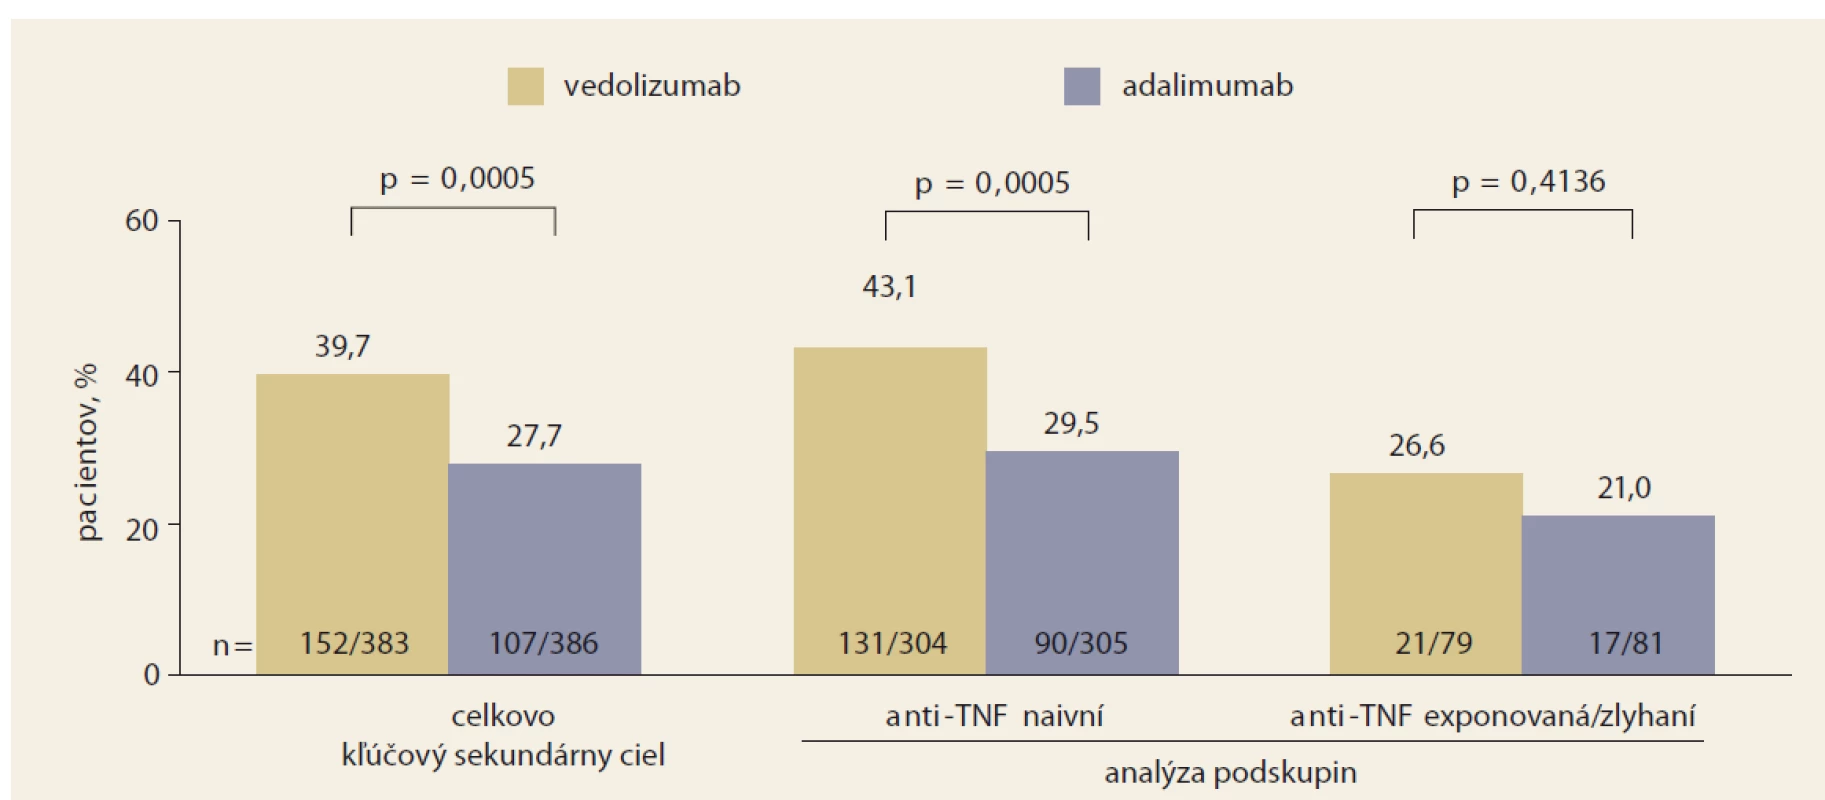 VARSITY:Porovnanie účinnosti vedolizumabu a adalimumabu v dosiahnutí slizničného zhojenia celkovo,
u bionaivných a anti-TNF exponovaných pacientov s ulceróznou kolitídou.<br>
Graph 4. VARSITIES: Comparison of the efficacy of vedolizumab and adalimumab in achieving mucosal healing overall,
in bionaive and anti-TNF exposed patients with ulcerative colitis.